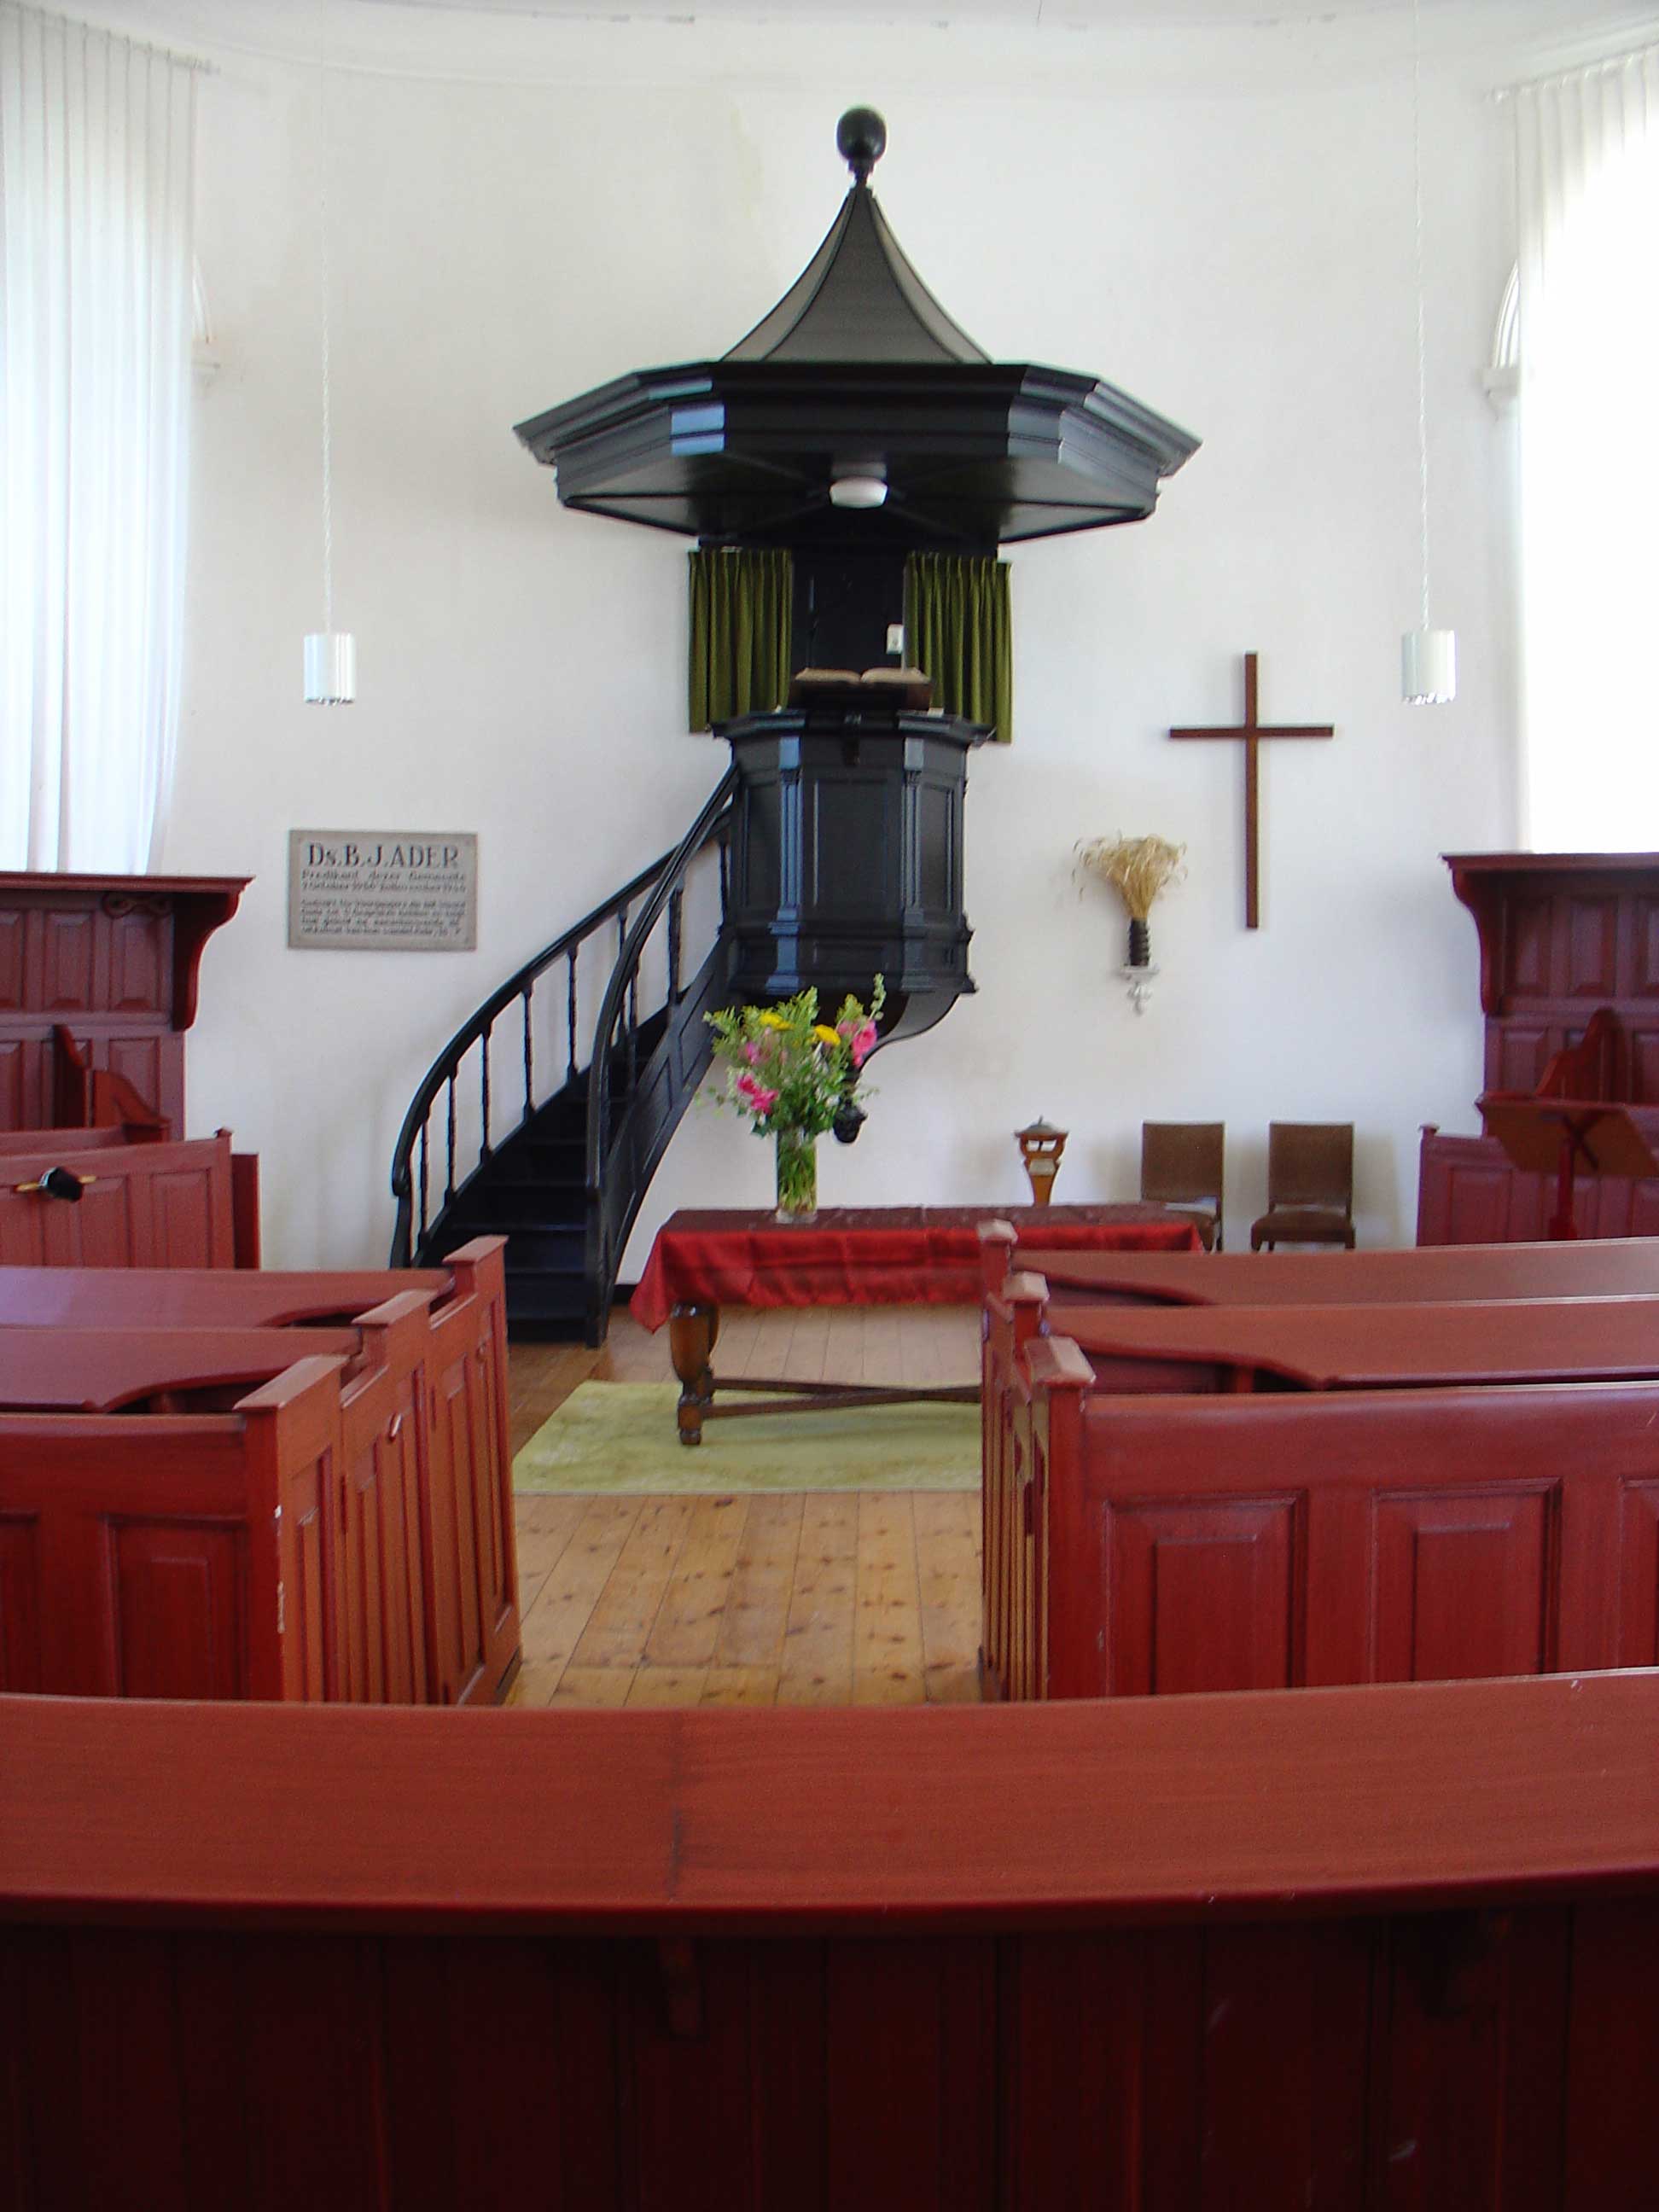 Interieur van de kerk met herdenkingsbord voor ds B.J. Ader.